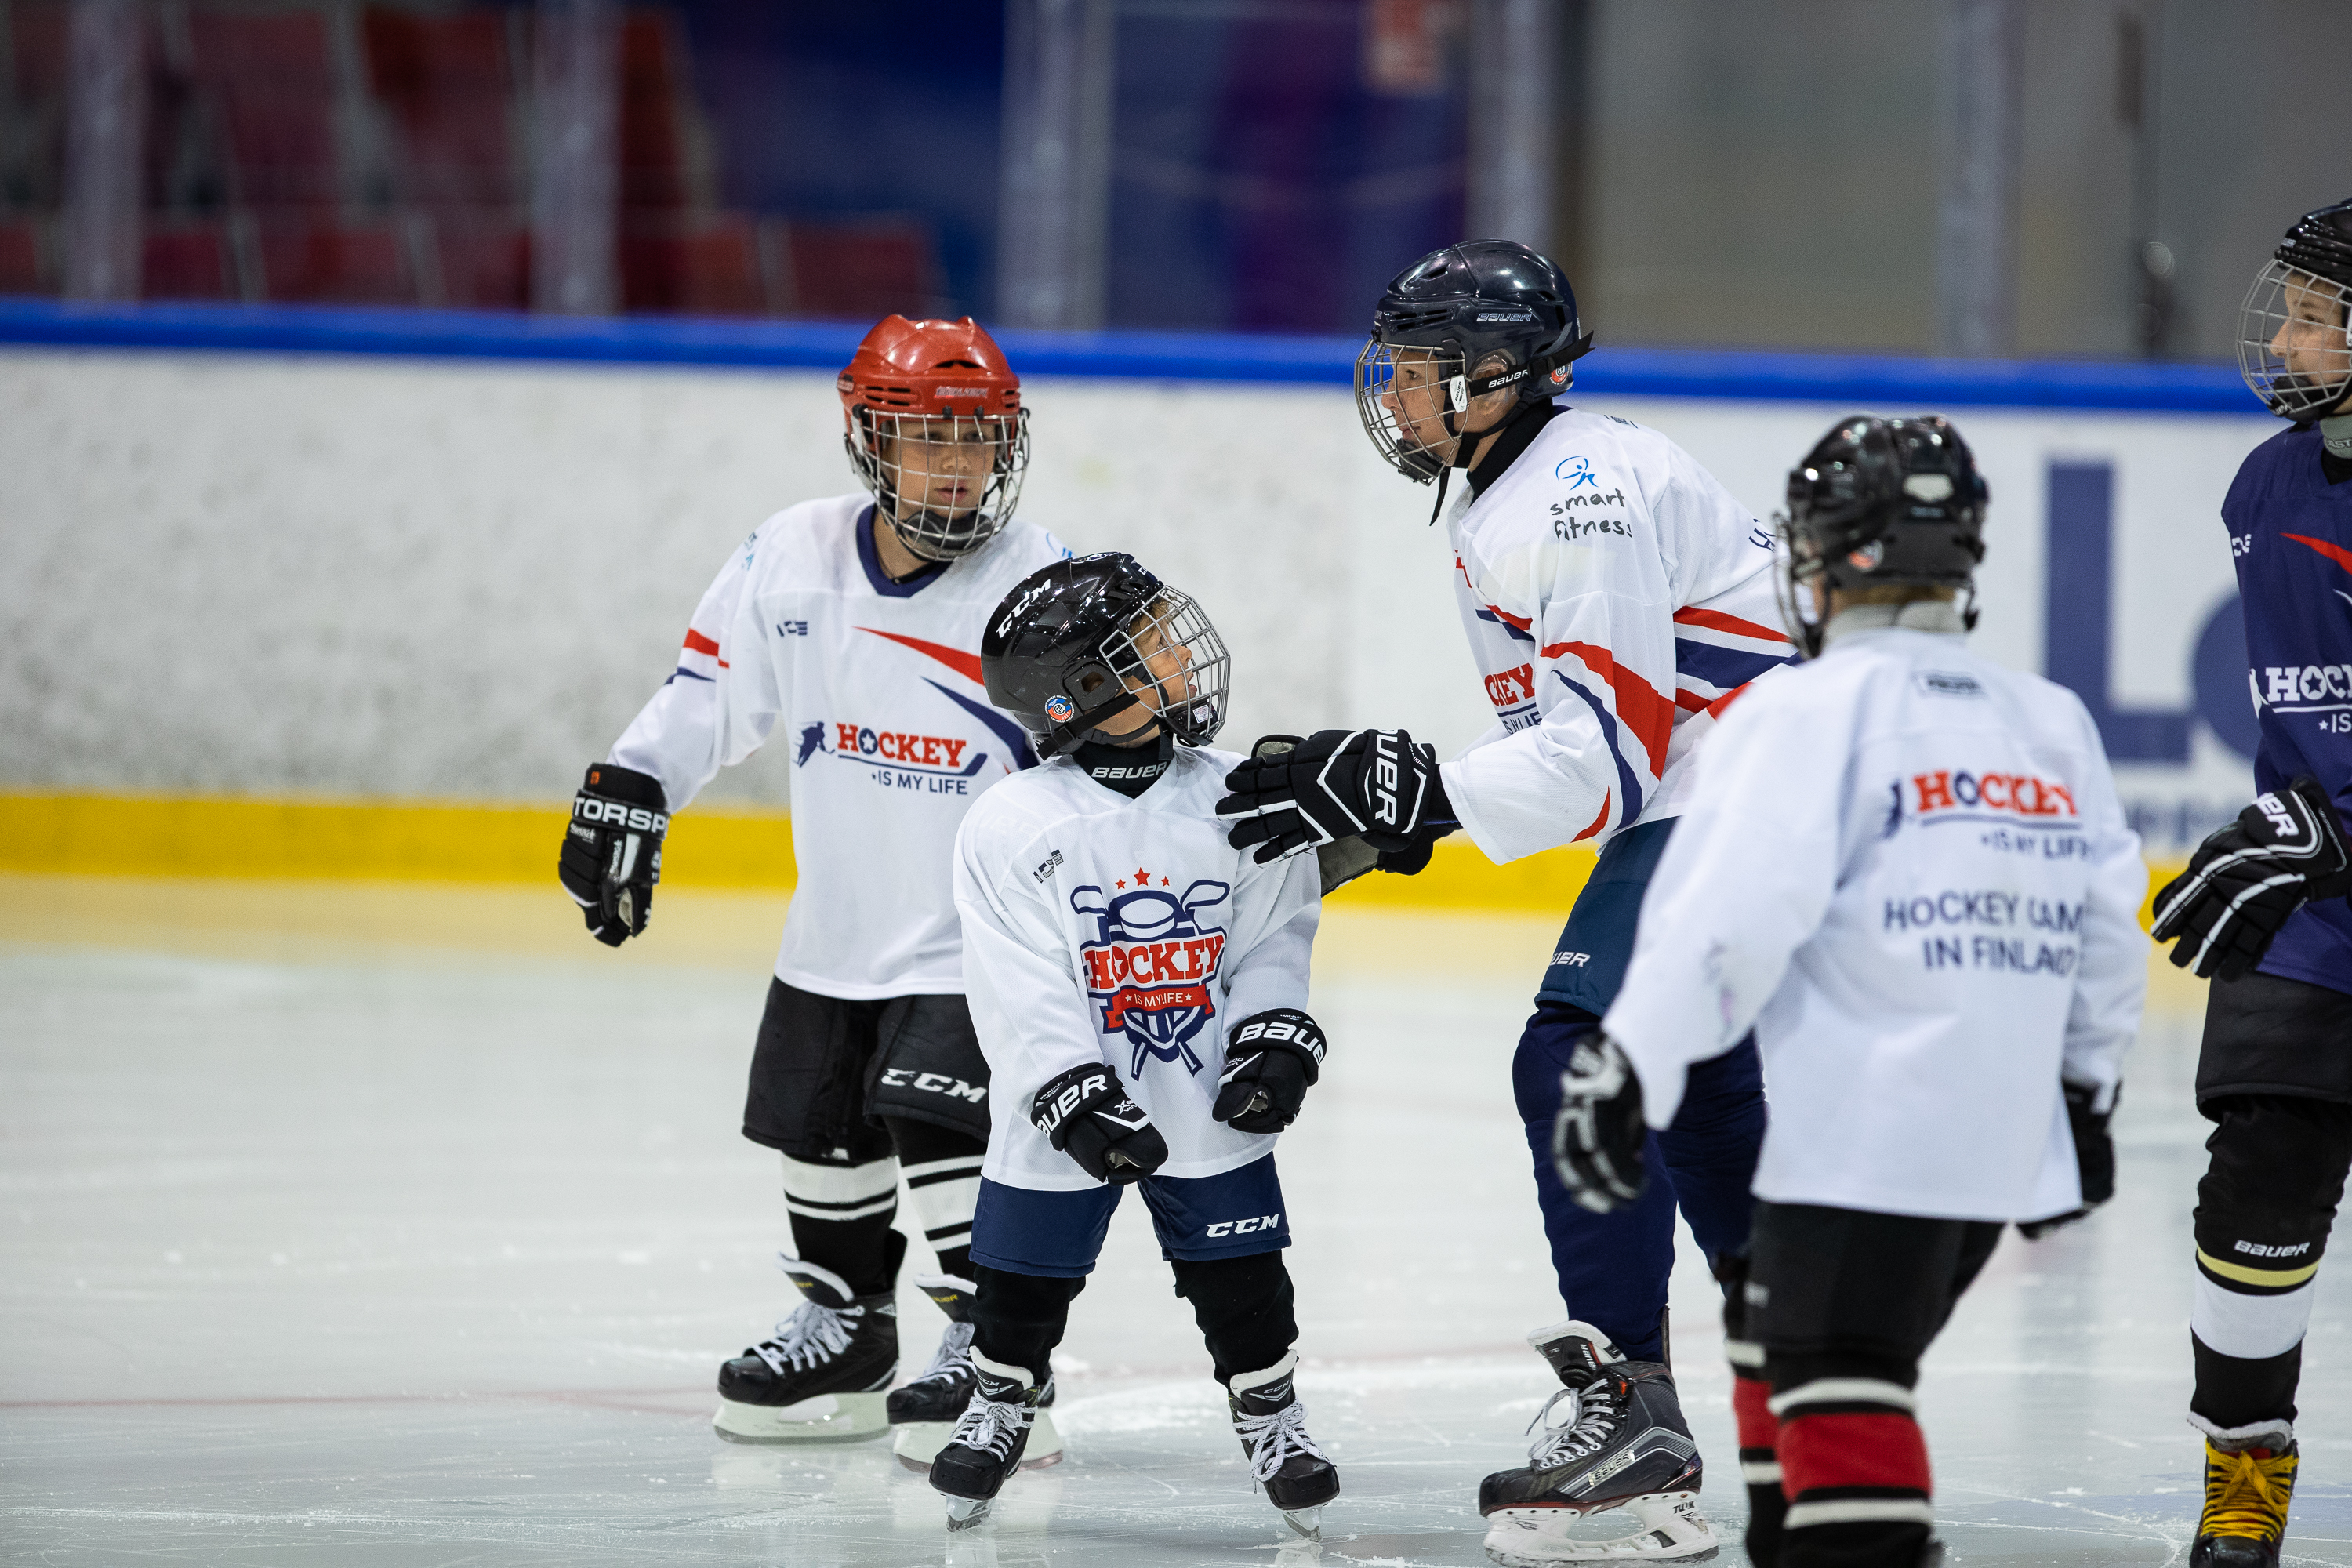 «Hockey is my life» – спортивный лагерь, Финляндия. Путевки в детский лагерь на 2023 год, фото 2